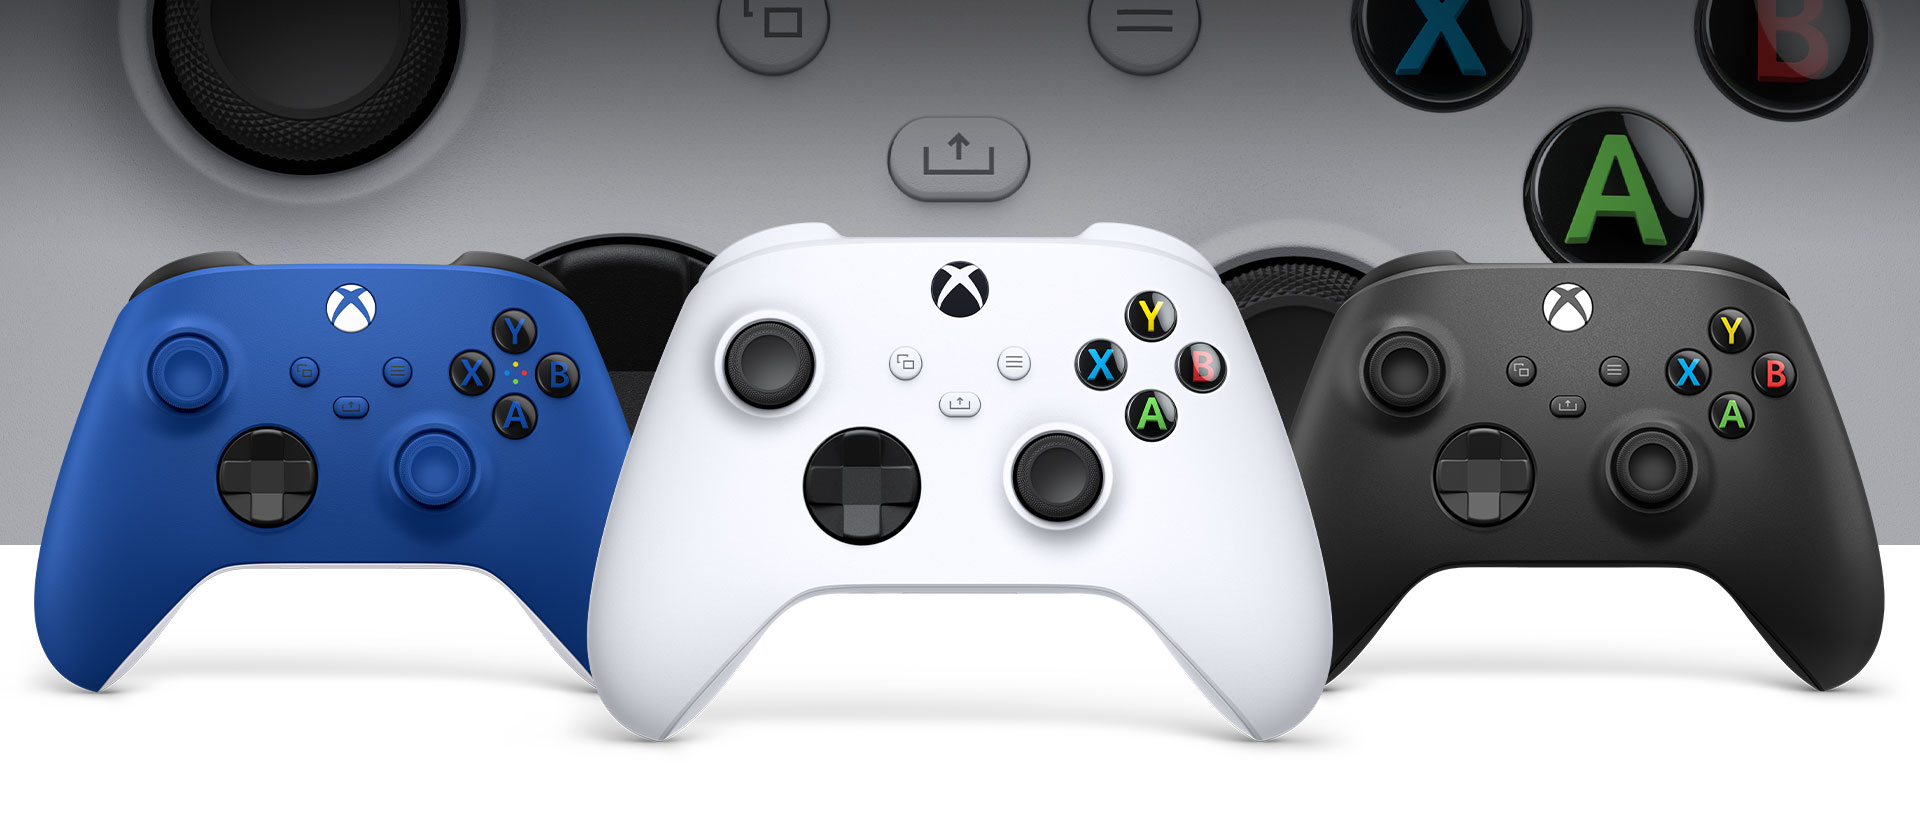 Xbox one wireless controller für pc - Wählen Sie dem Sieger